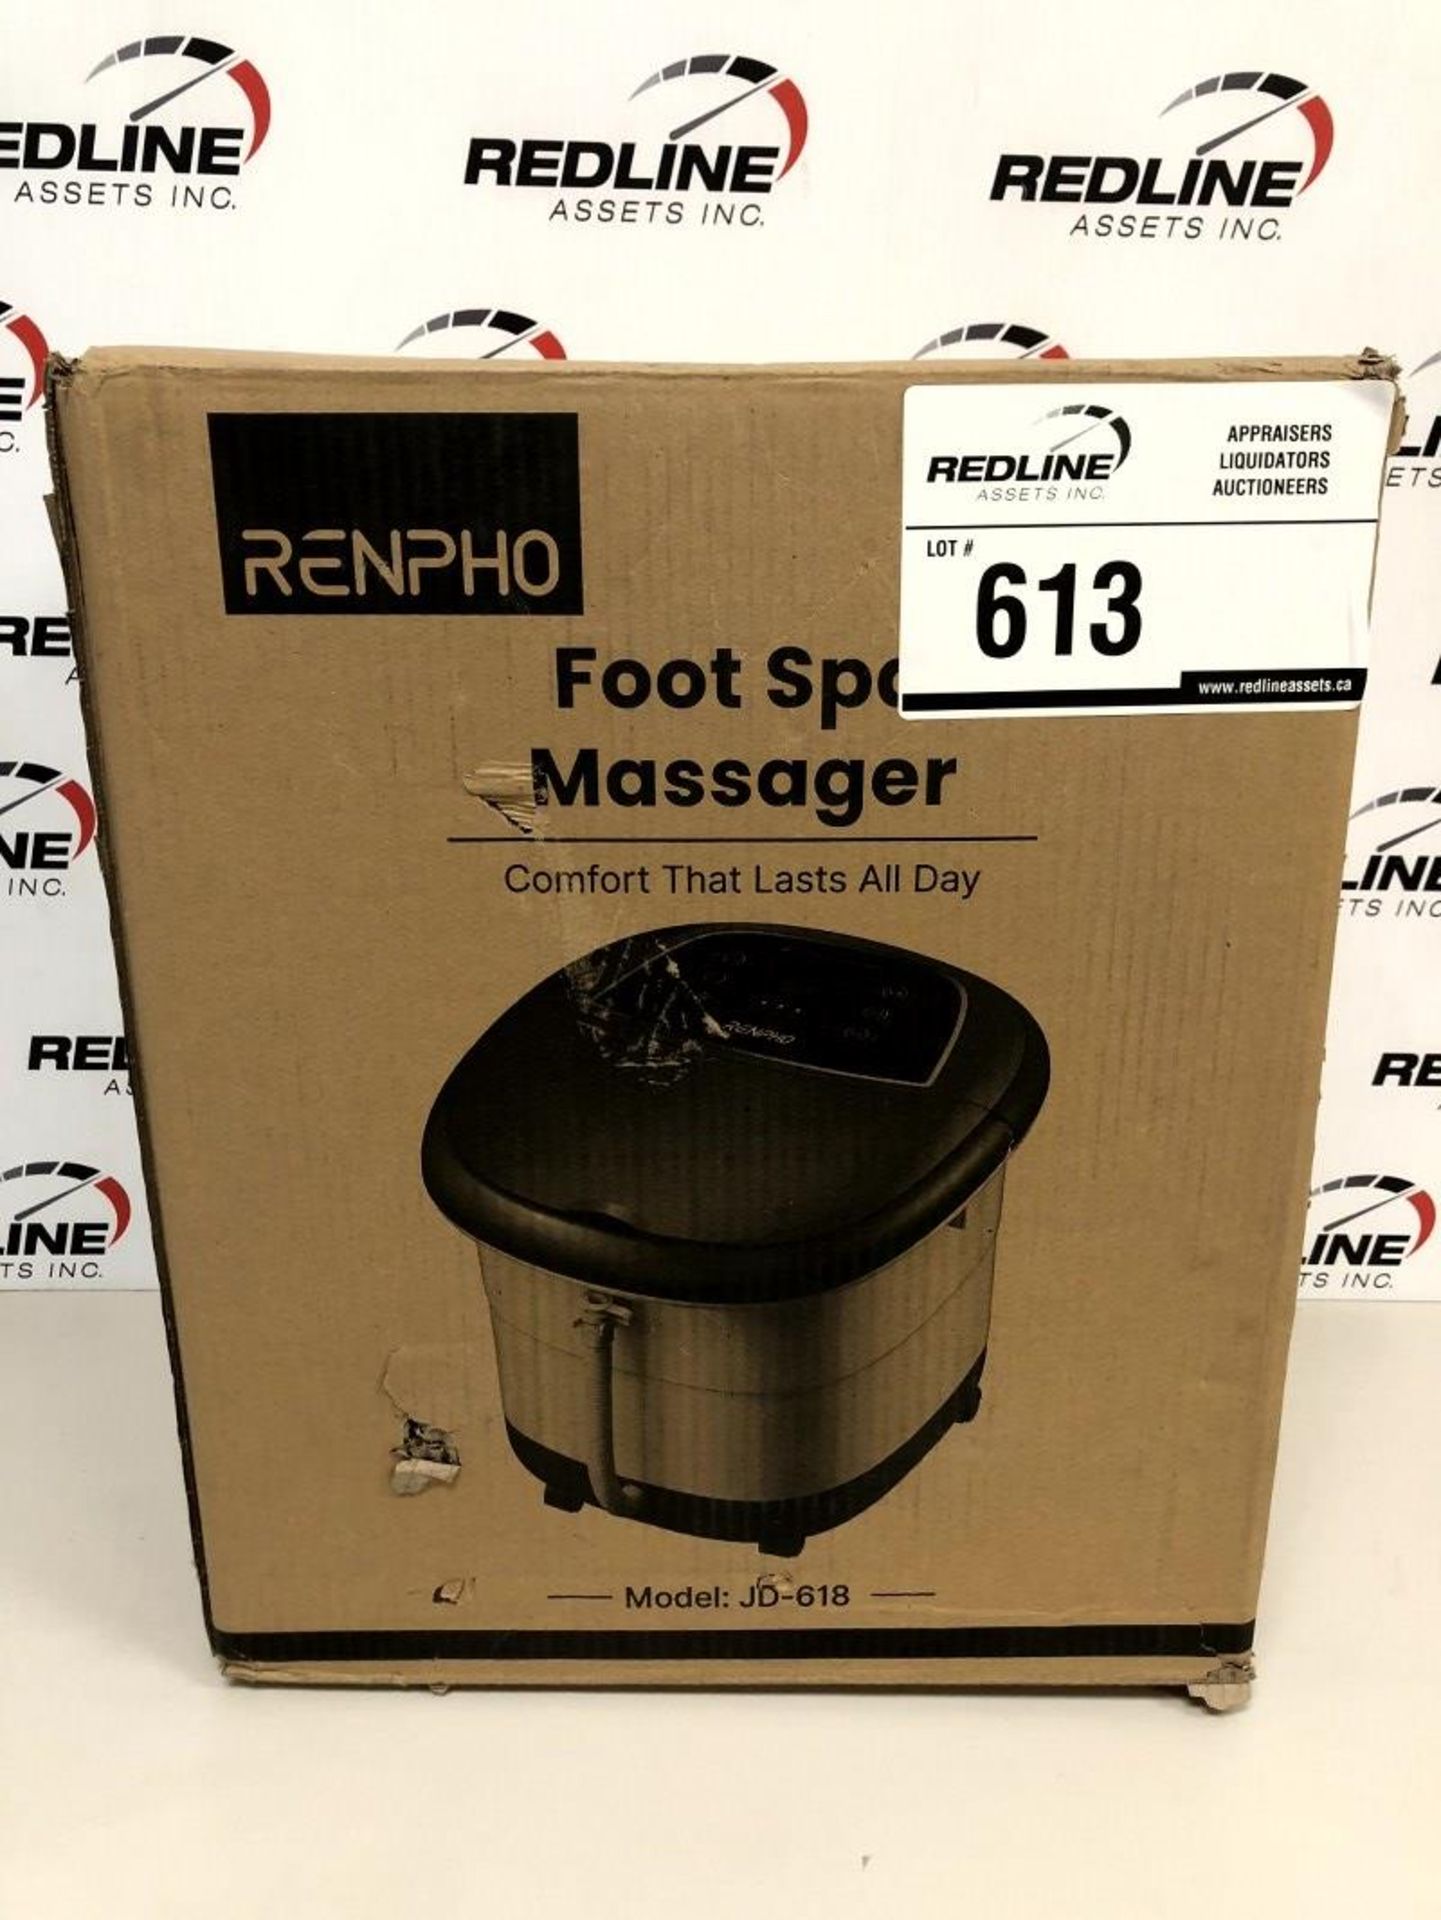 Renpho - Foot Spa Massager - Jd-618